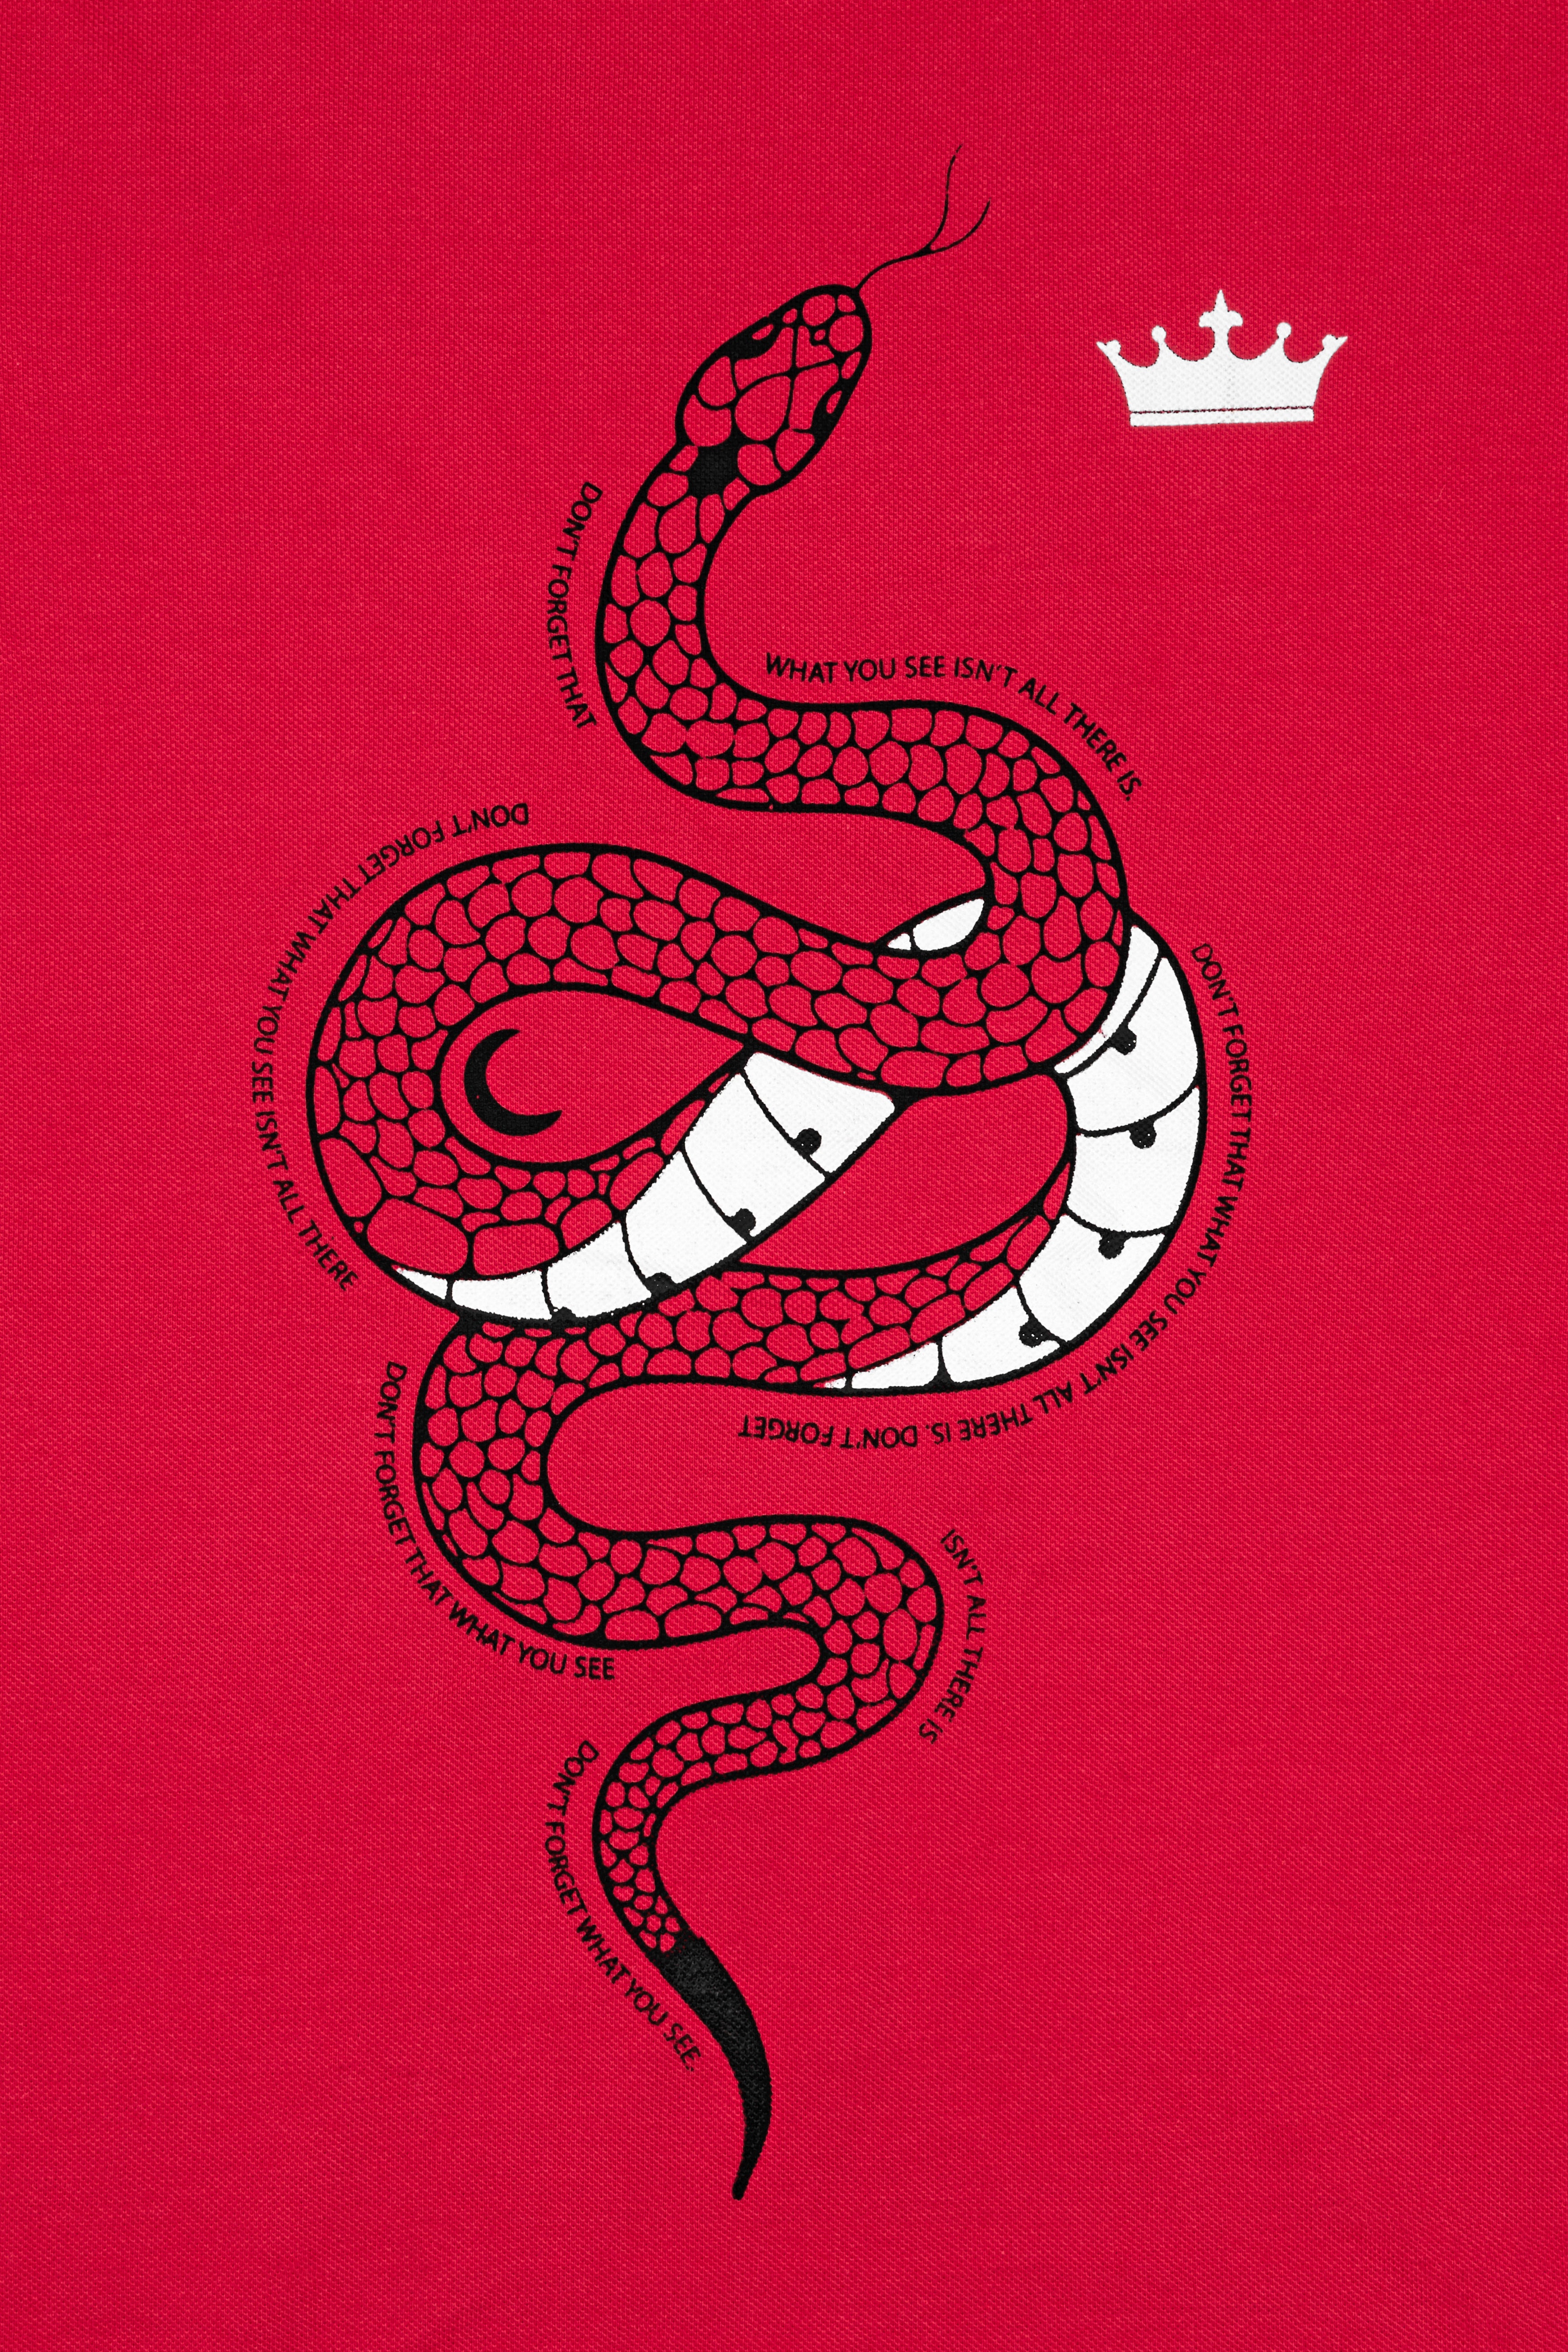 Monza Red Snake Printed Premium Cotton Pique T-Shirt TS904-S, TS904-M, TS904-L, TS904-XL, TS904-XXL